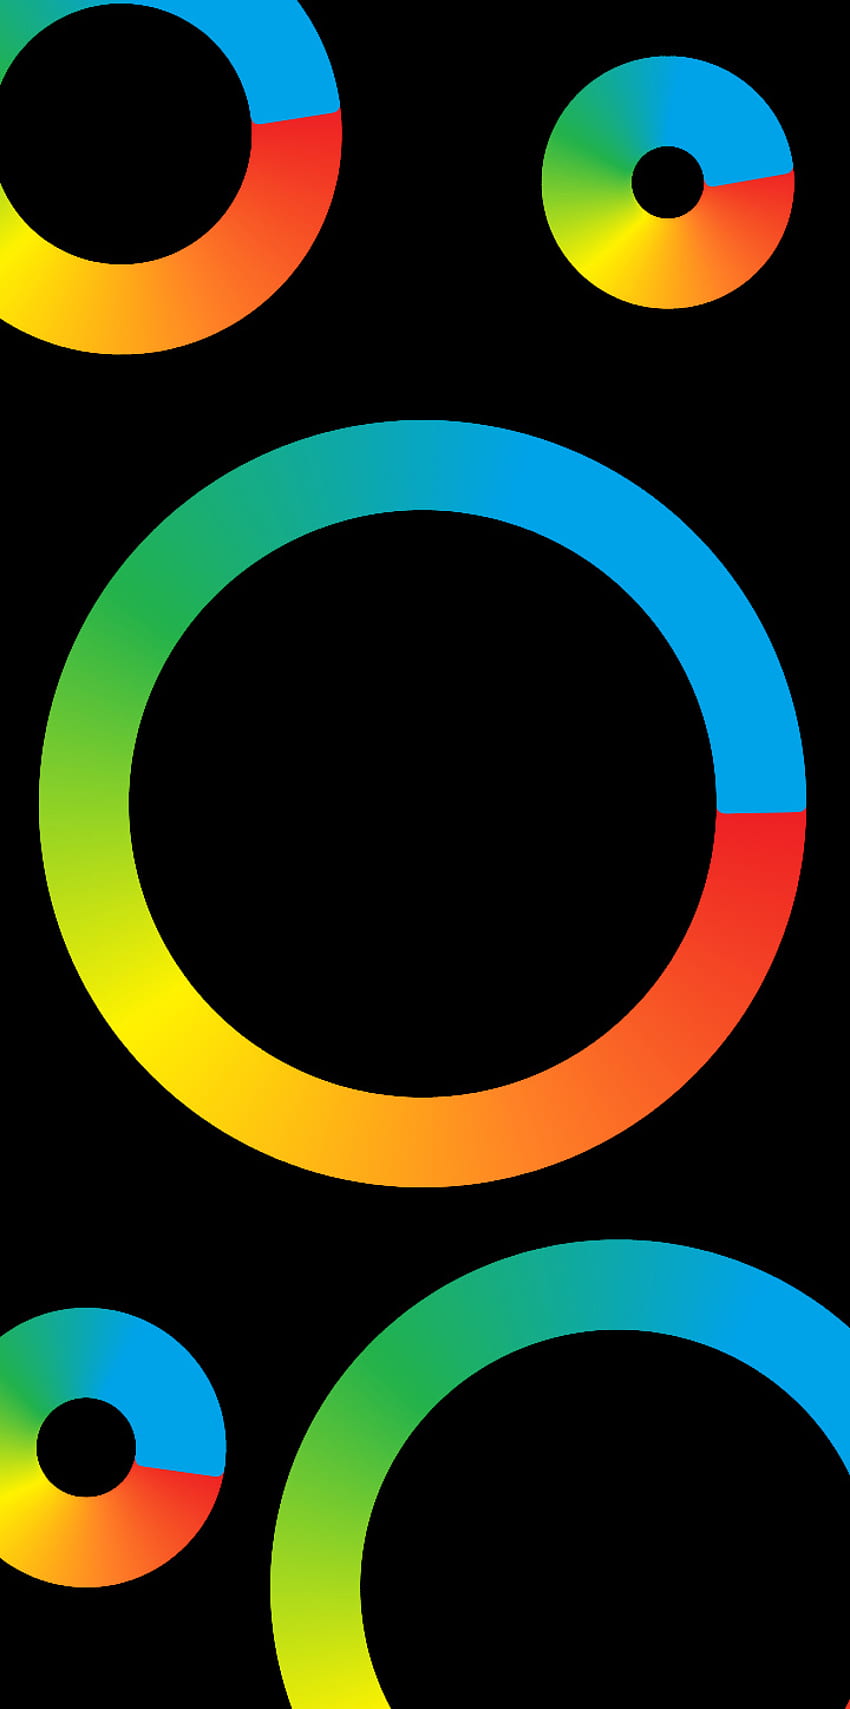 Diseño de estilo de píxeles, arco iris, símbolo, colorido, negro, oscuro, círculos, colores fondo de pantalla del teléfono